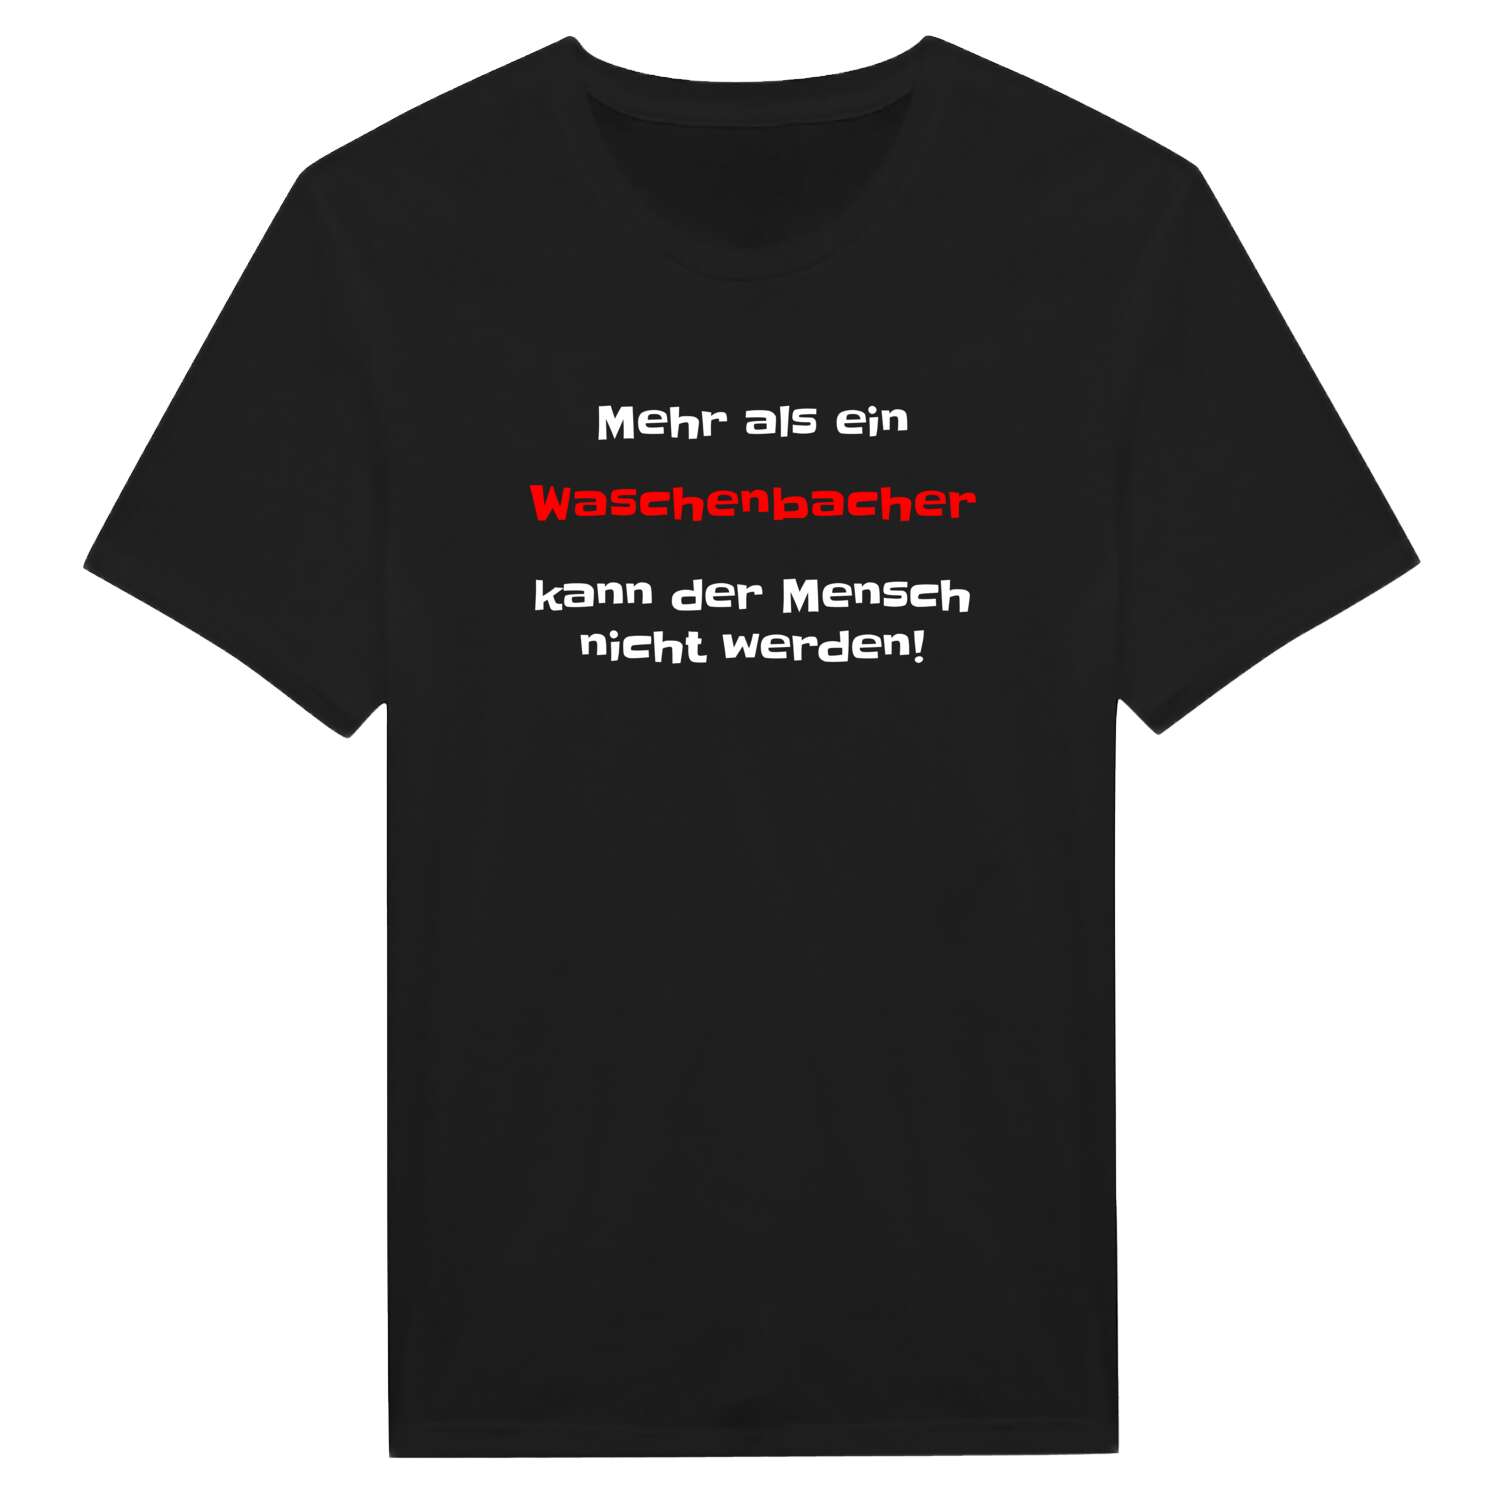 Waschenbach T-Shirt »Mehr als ein«